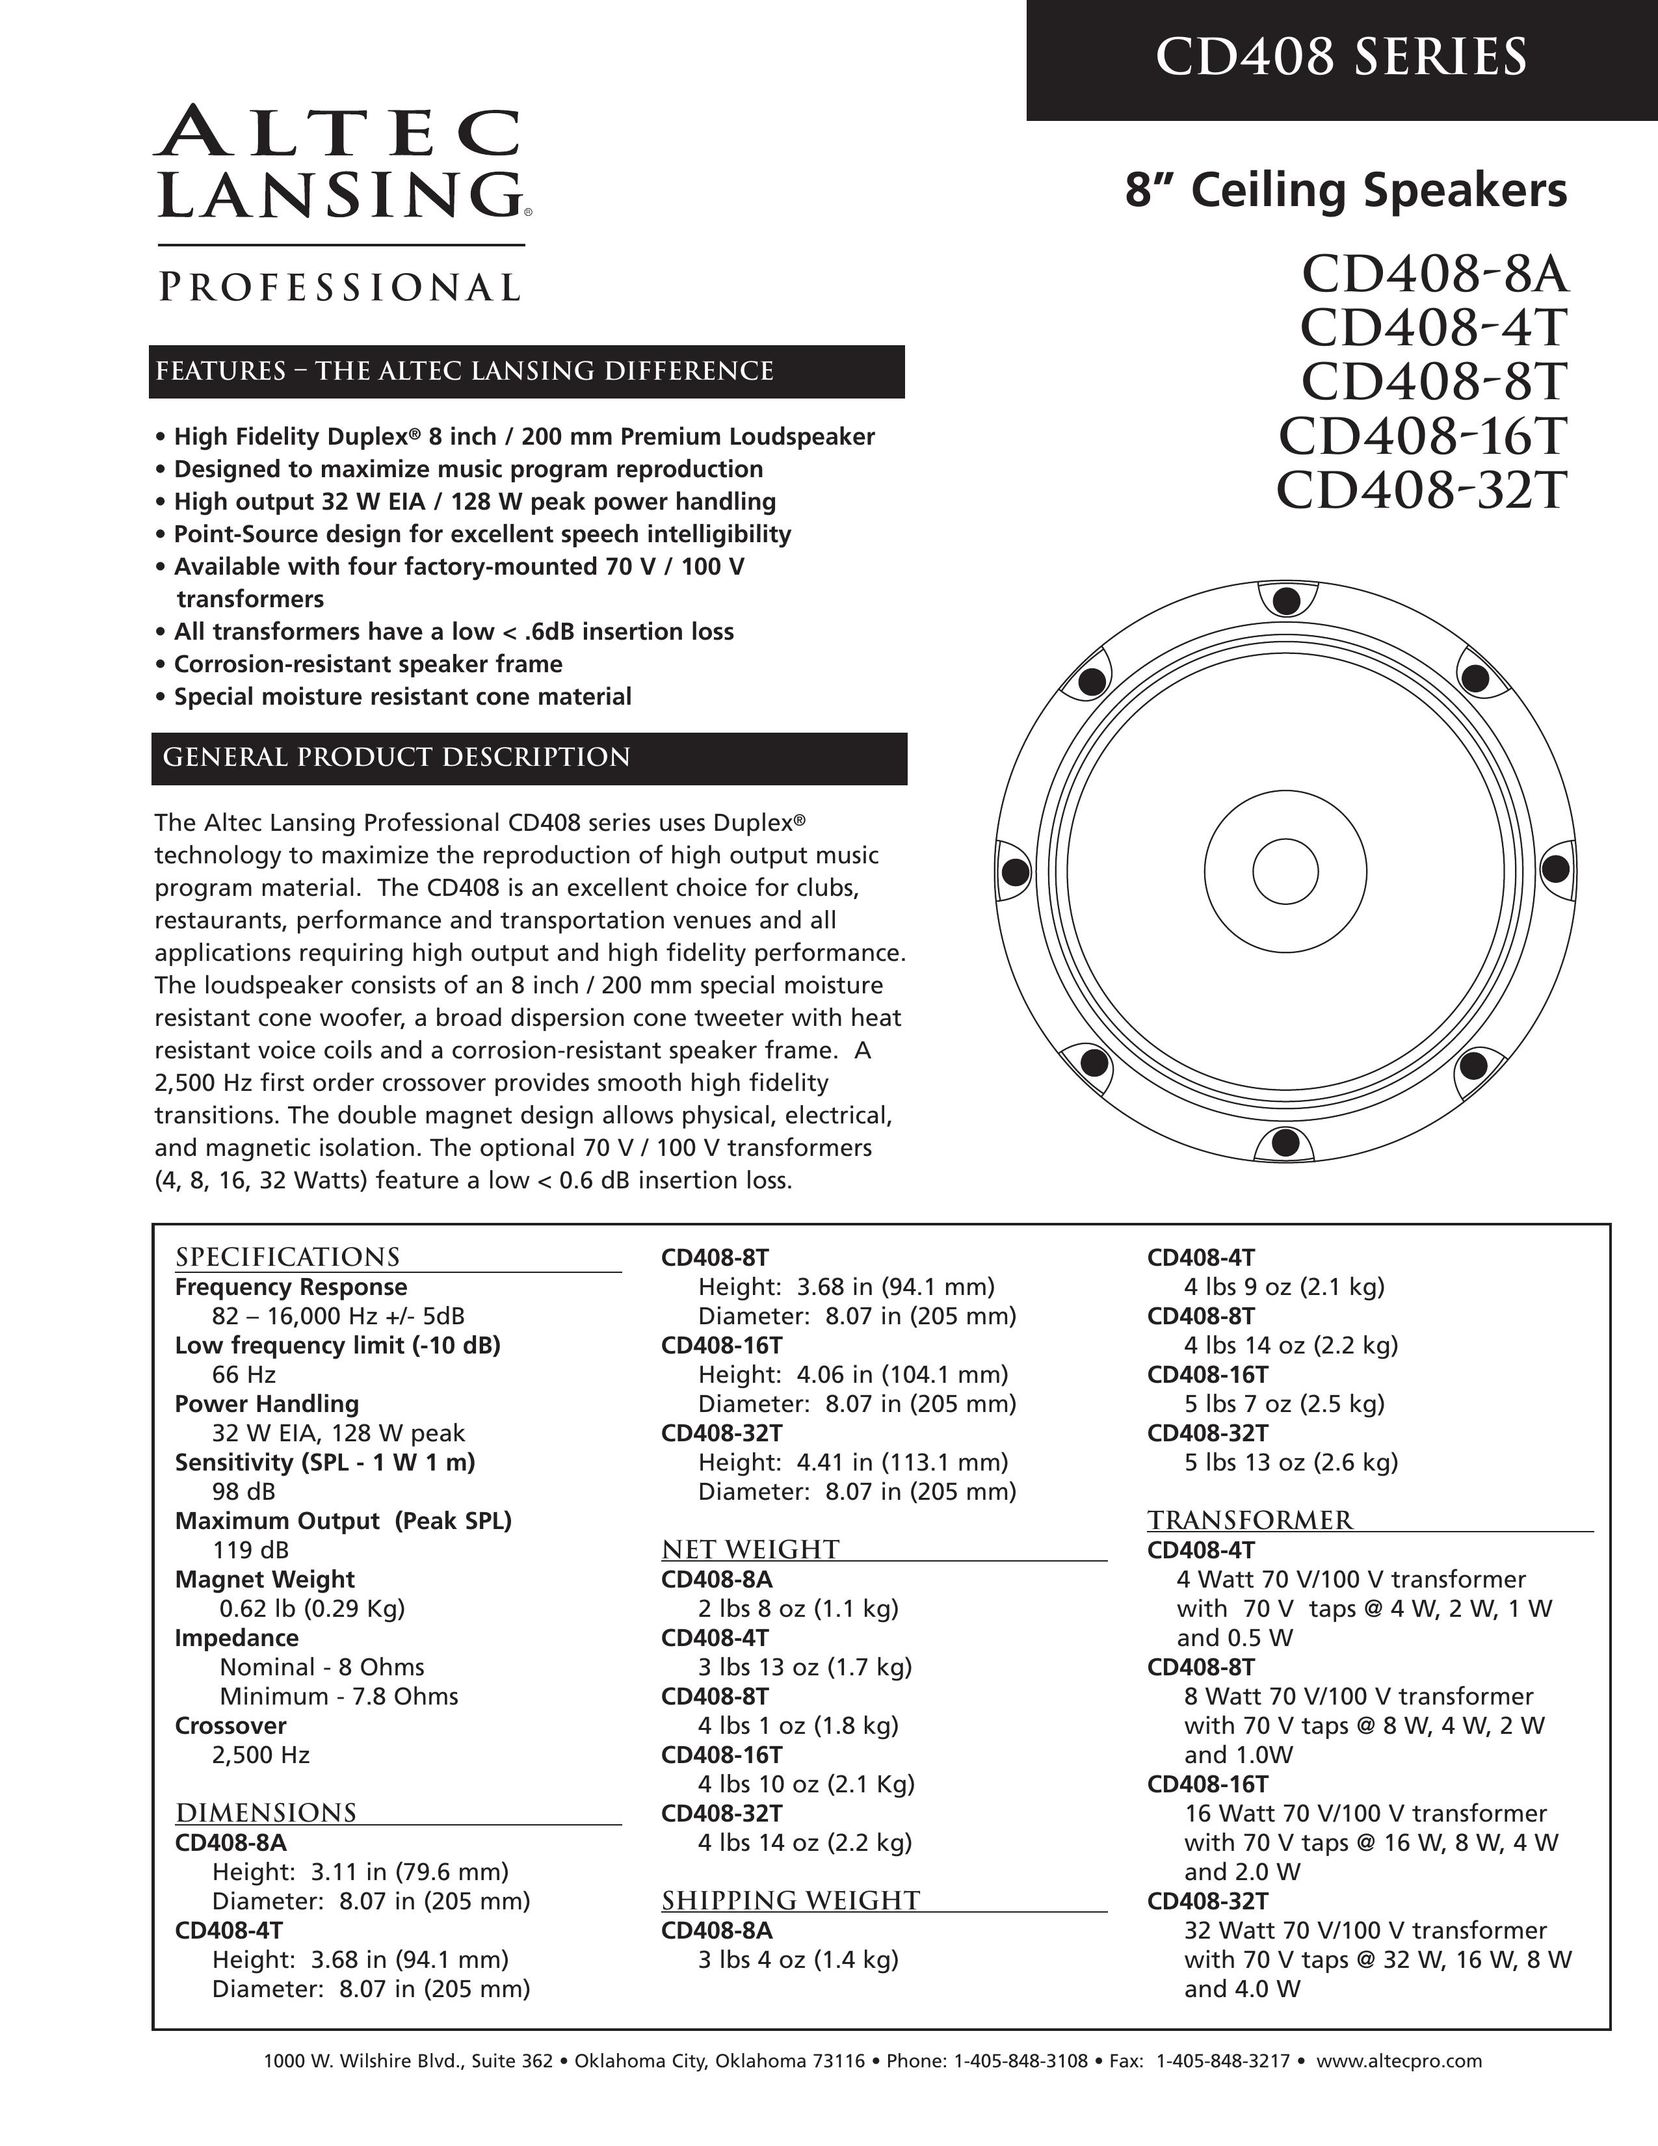 Altec Lansing CD408-32T Speaker User Manual